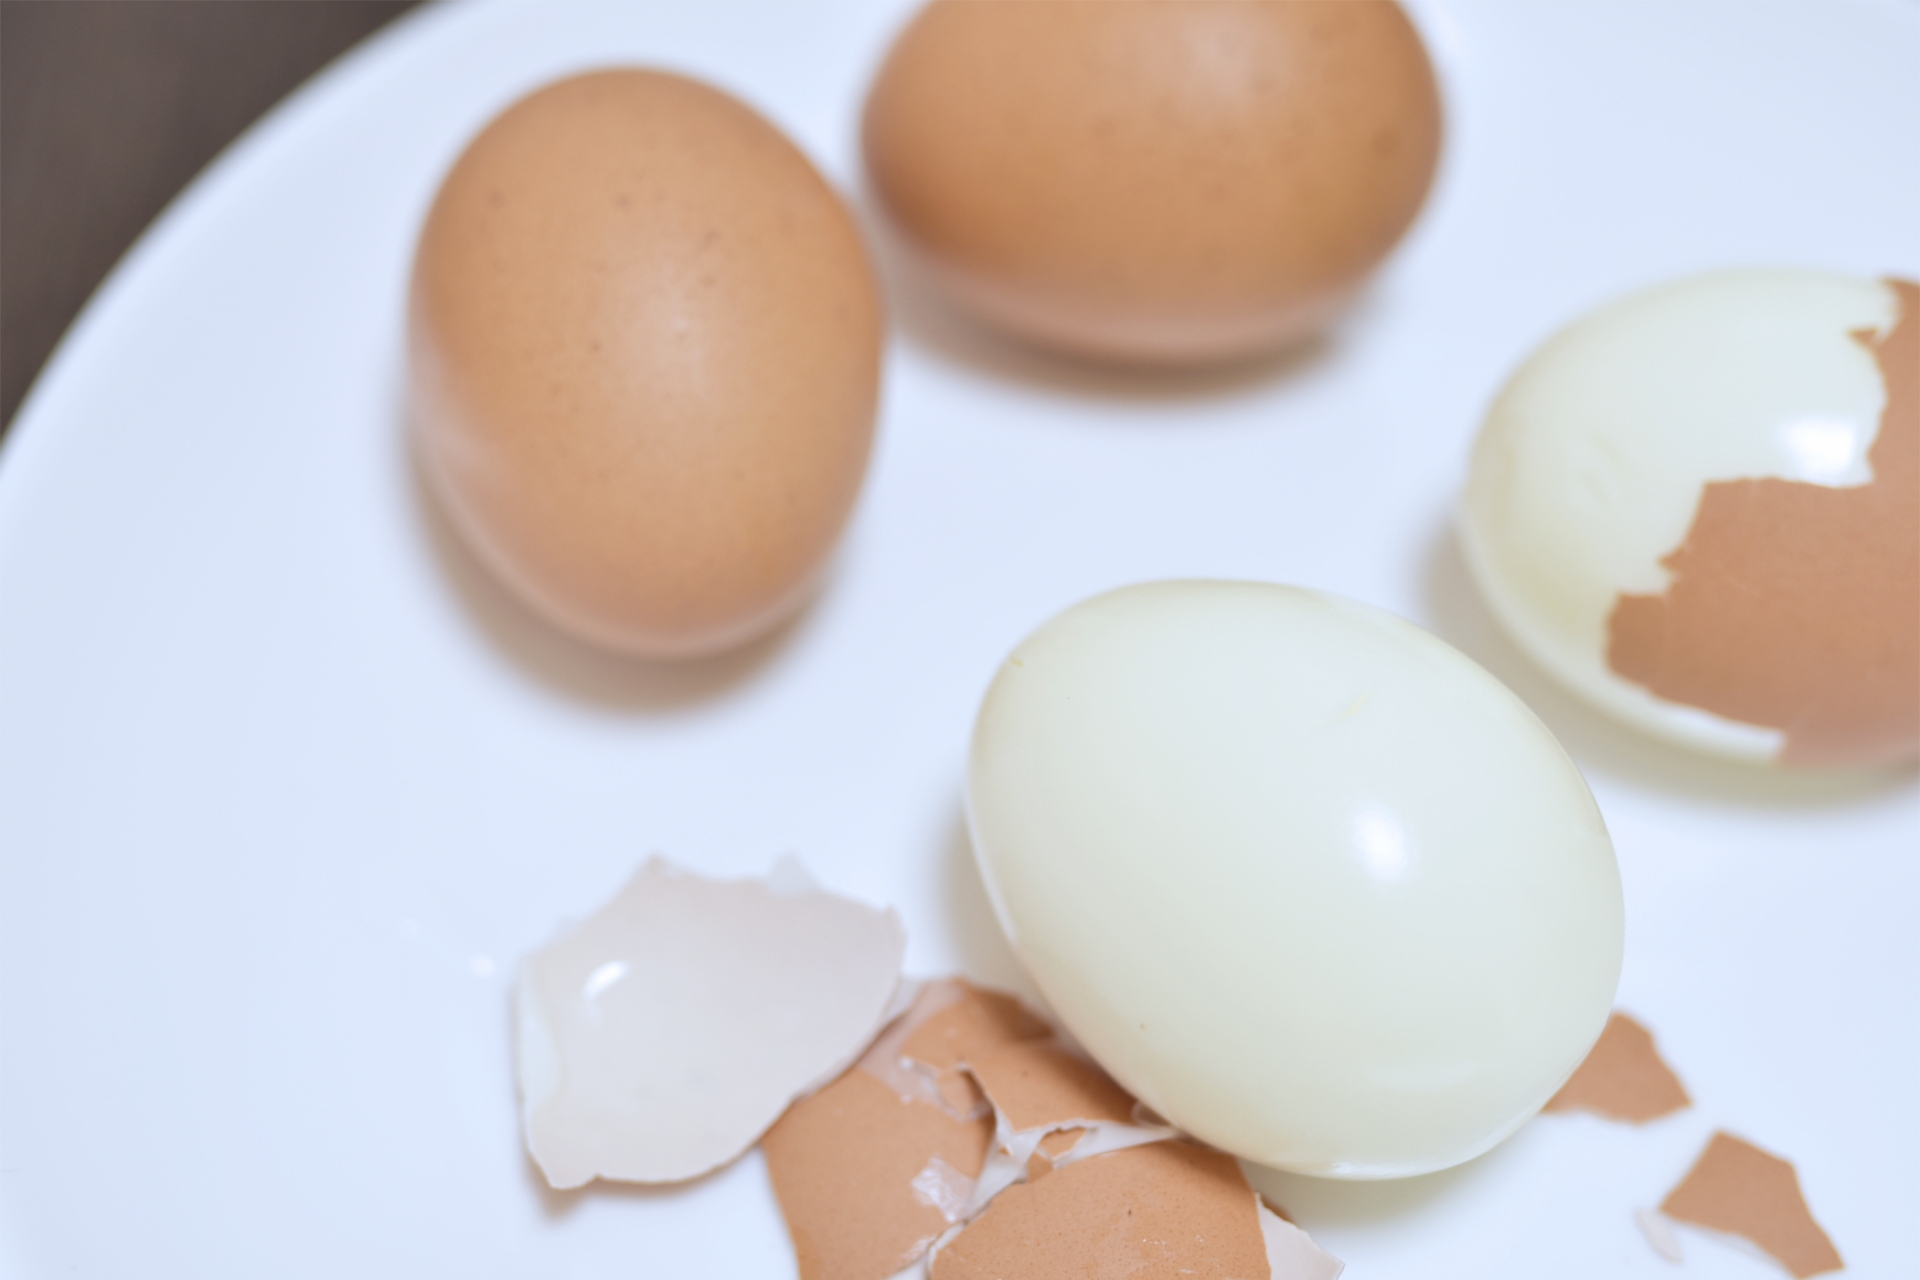 ゆで卵の食べ方にマナーはあるの テーブルの角でコンコンはダメ 知識の泉